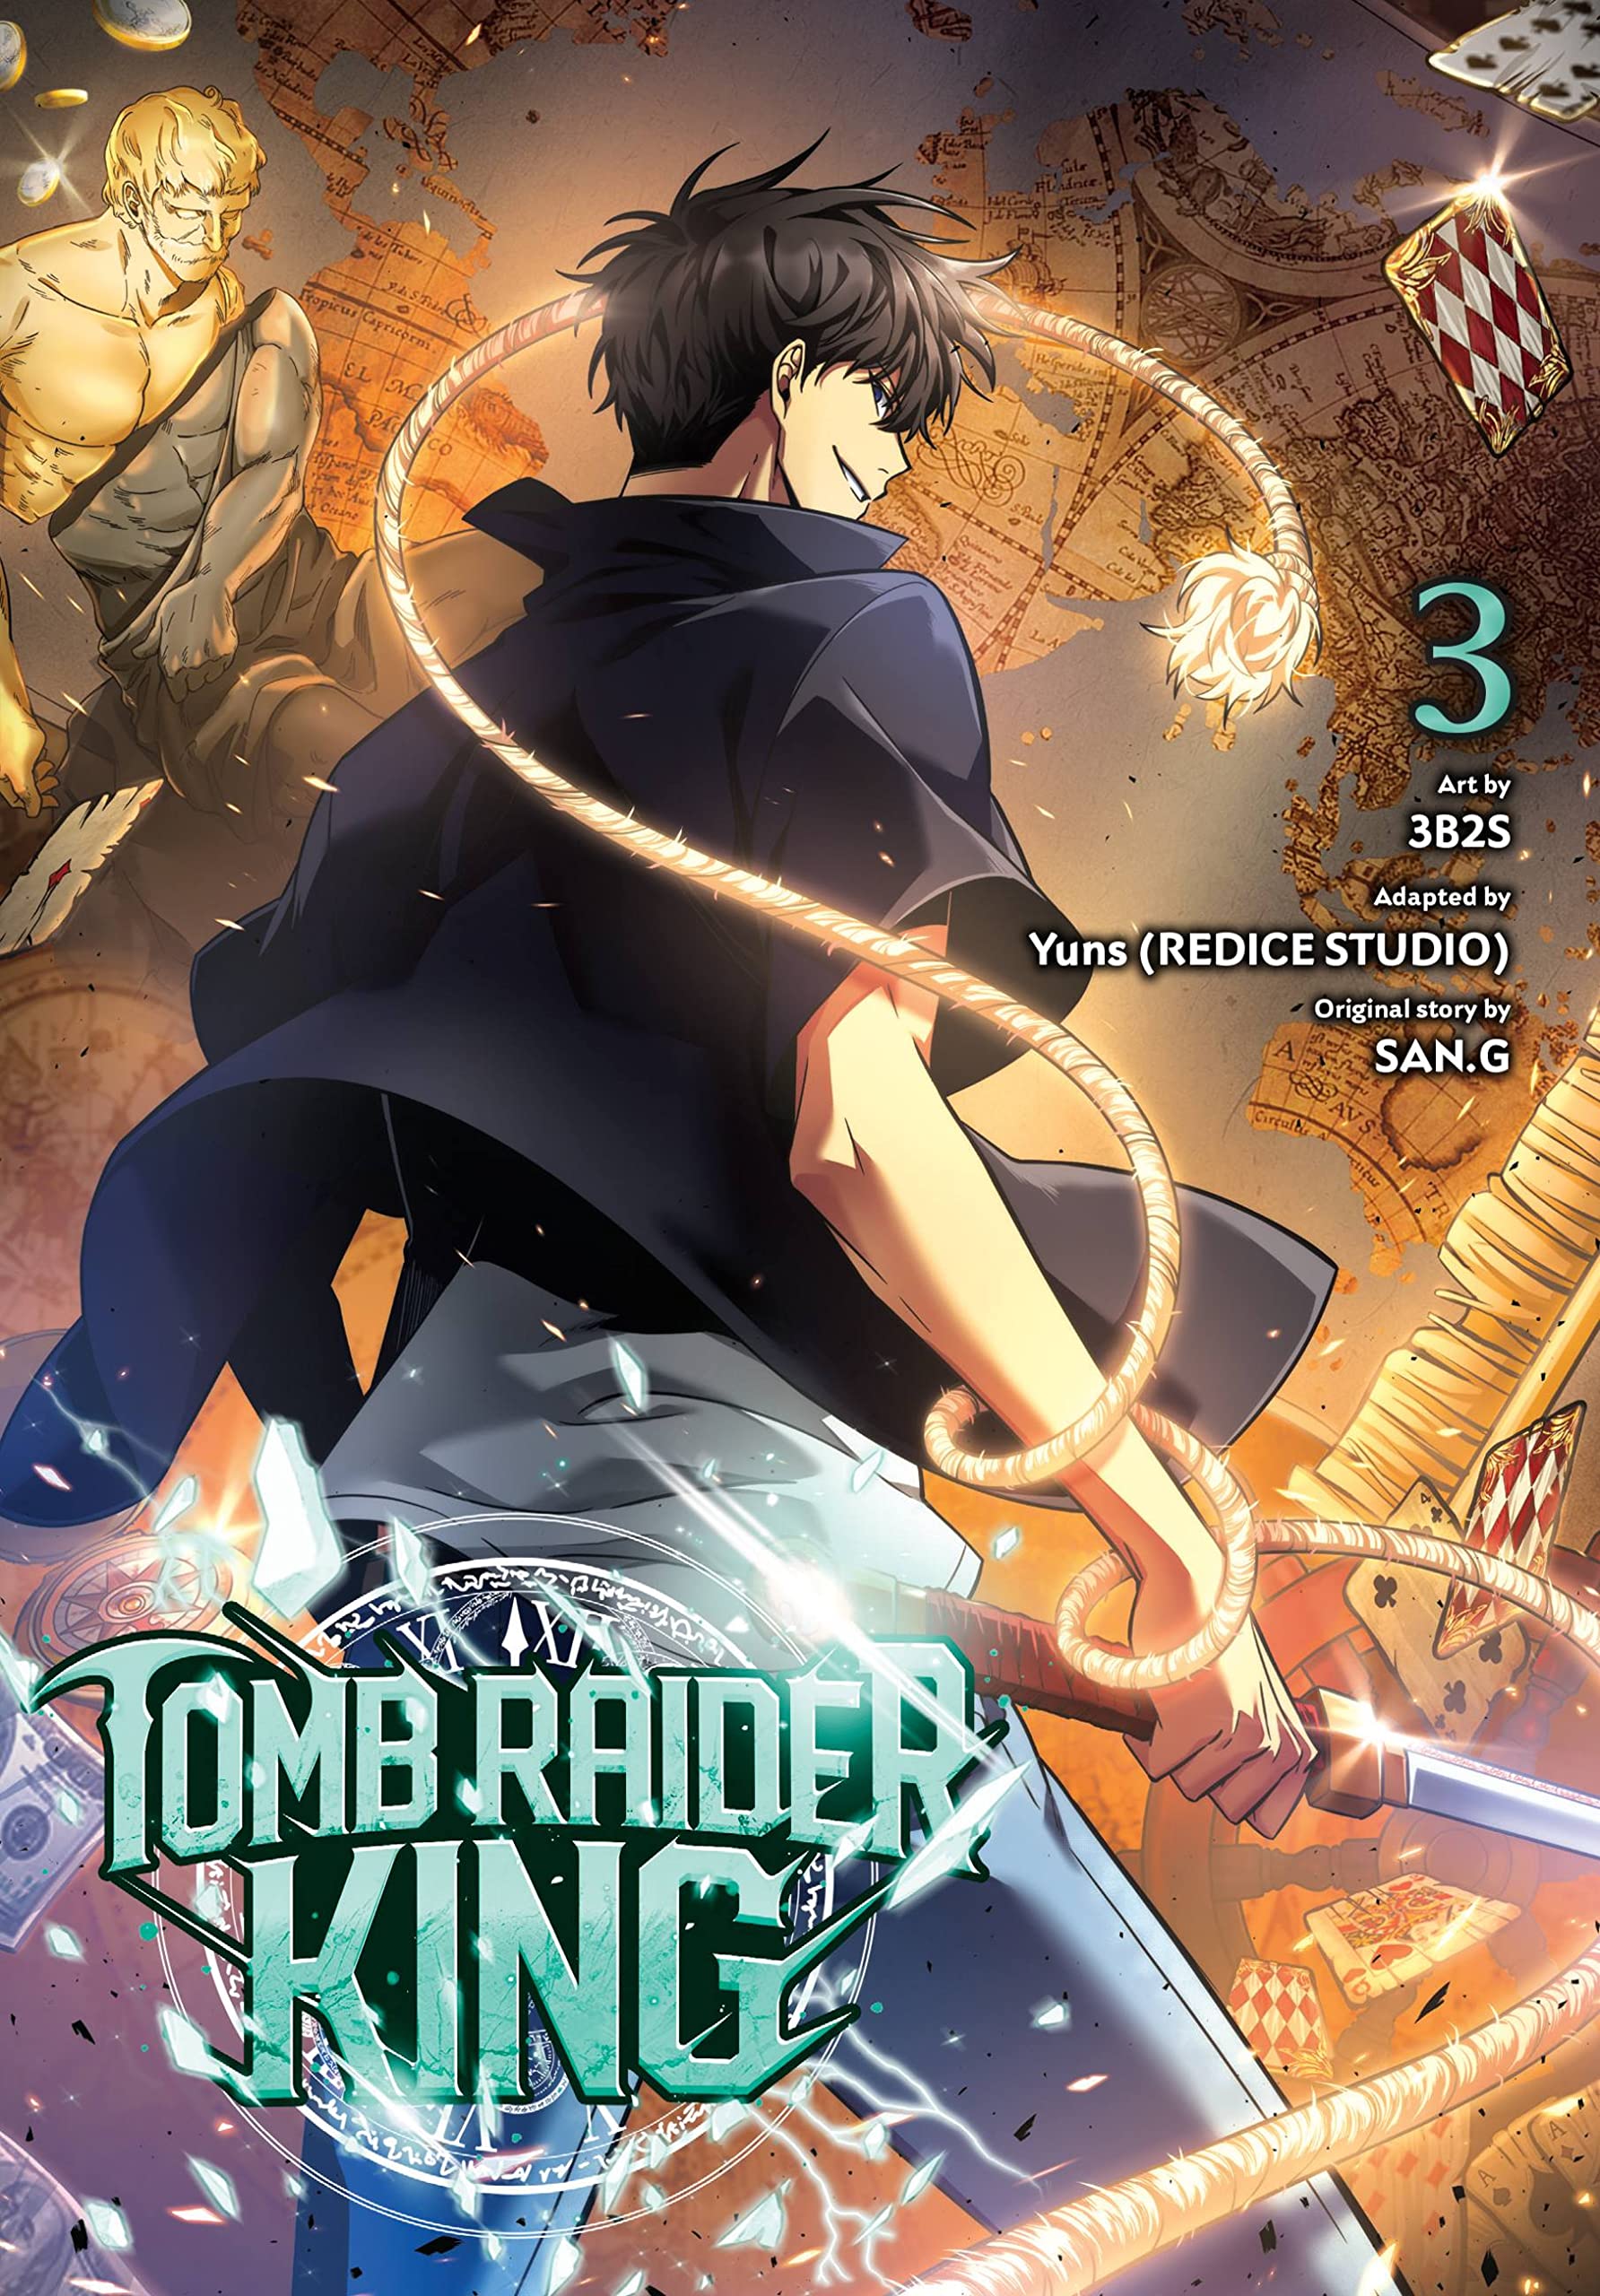 Tomb Raider King Vol. 03